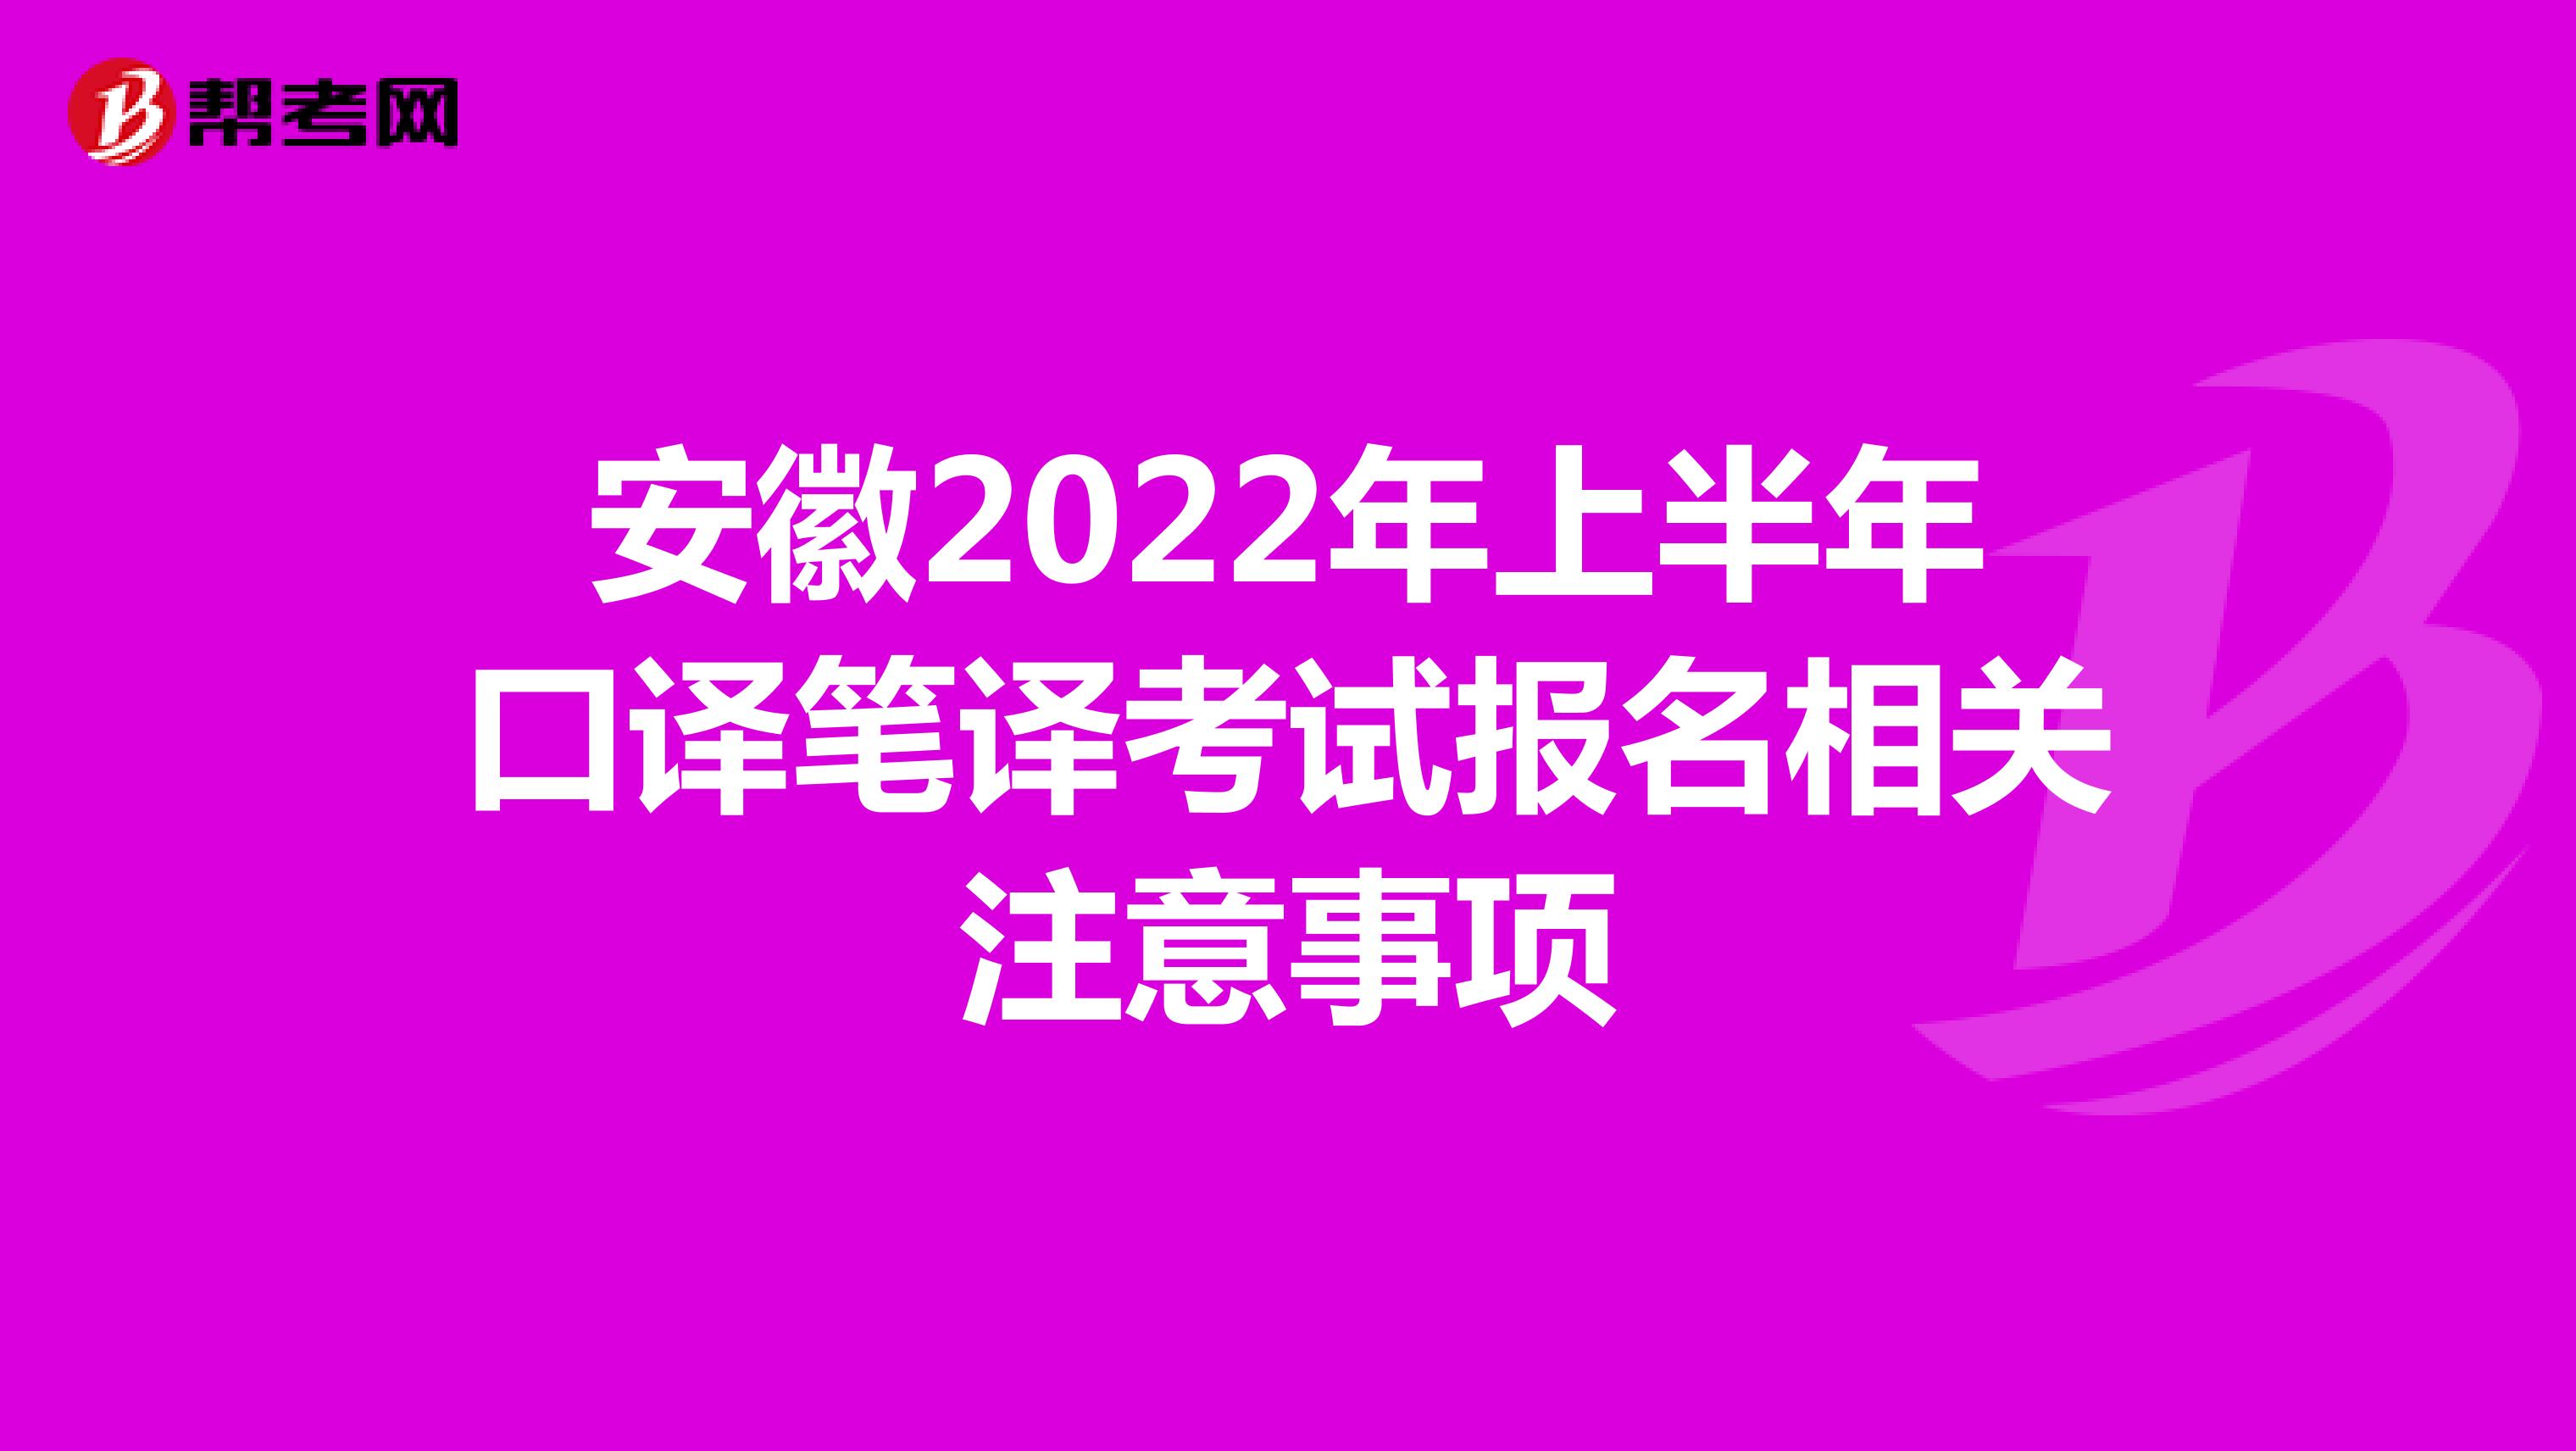 安徽2022年上半年口译笔译考试报名相关注意事项